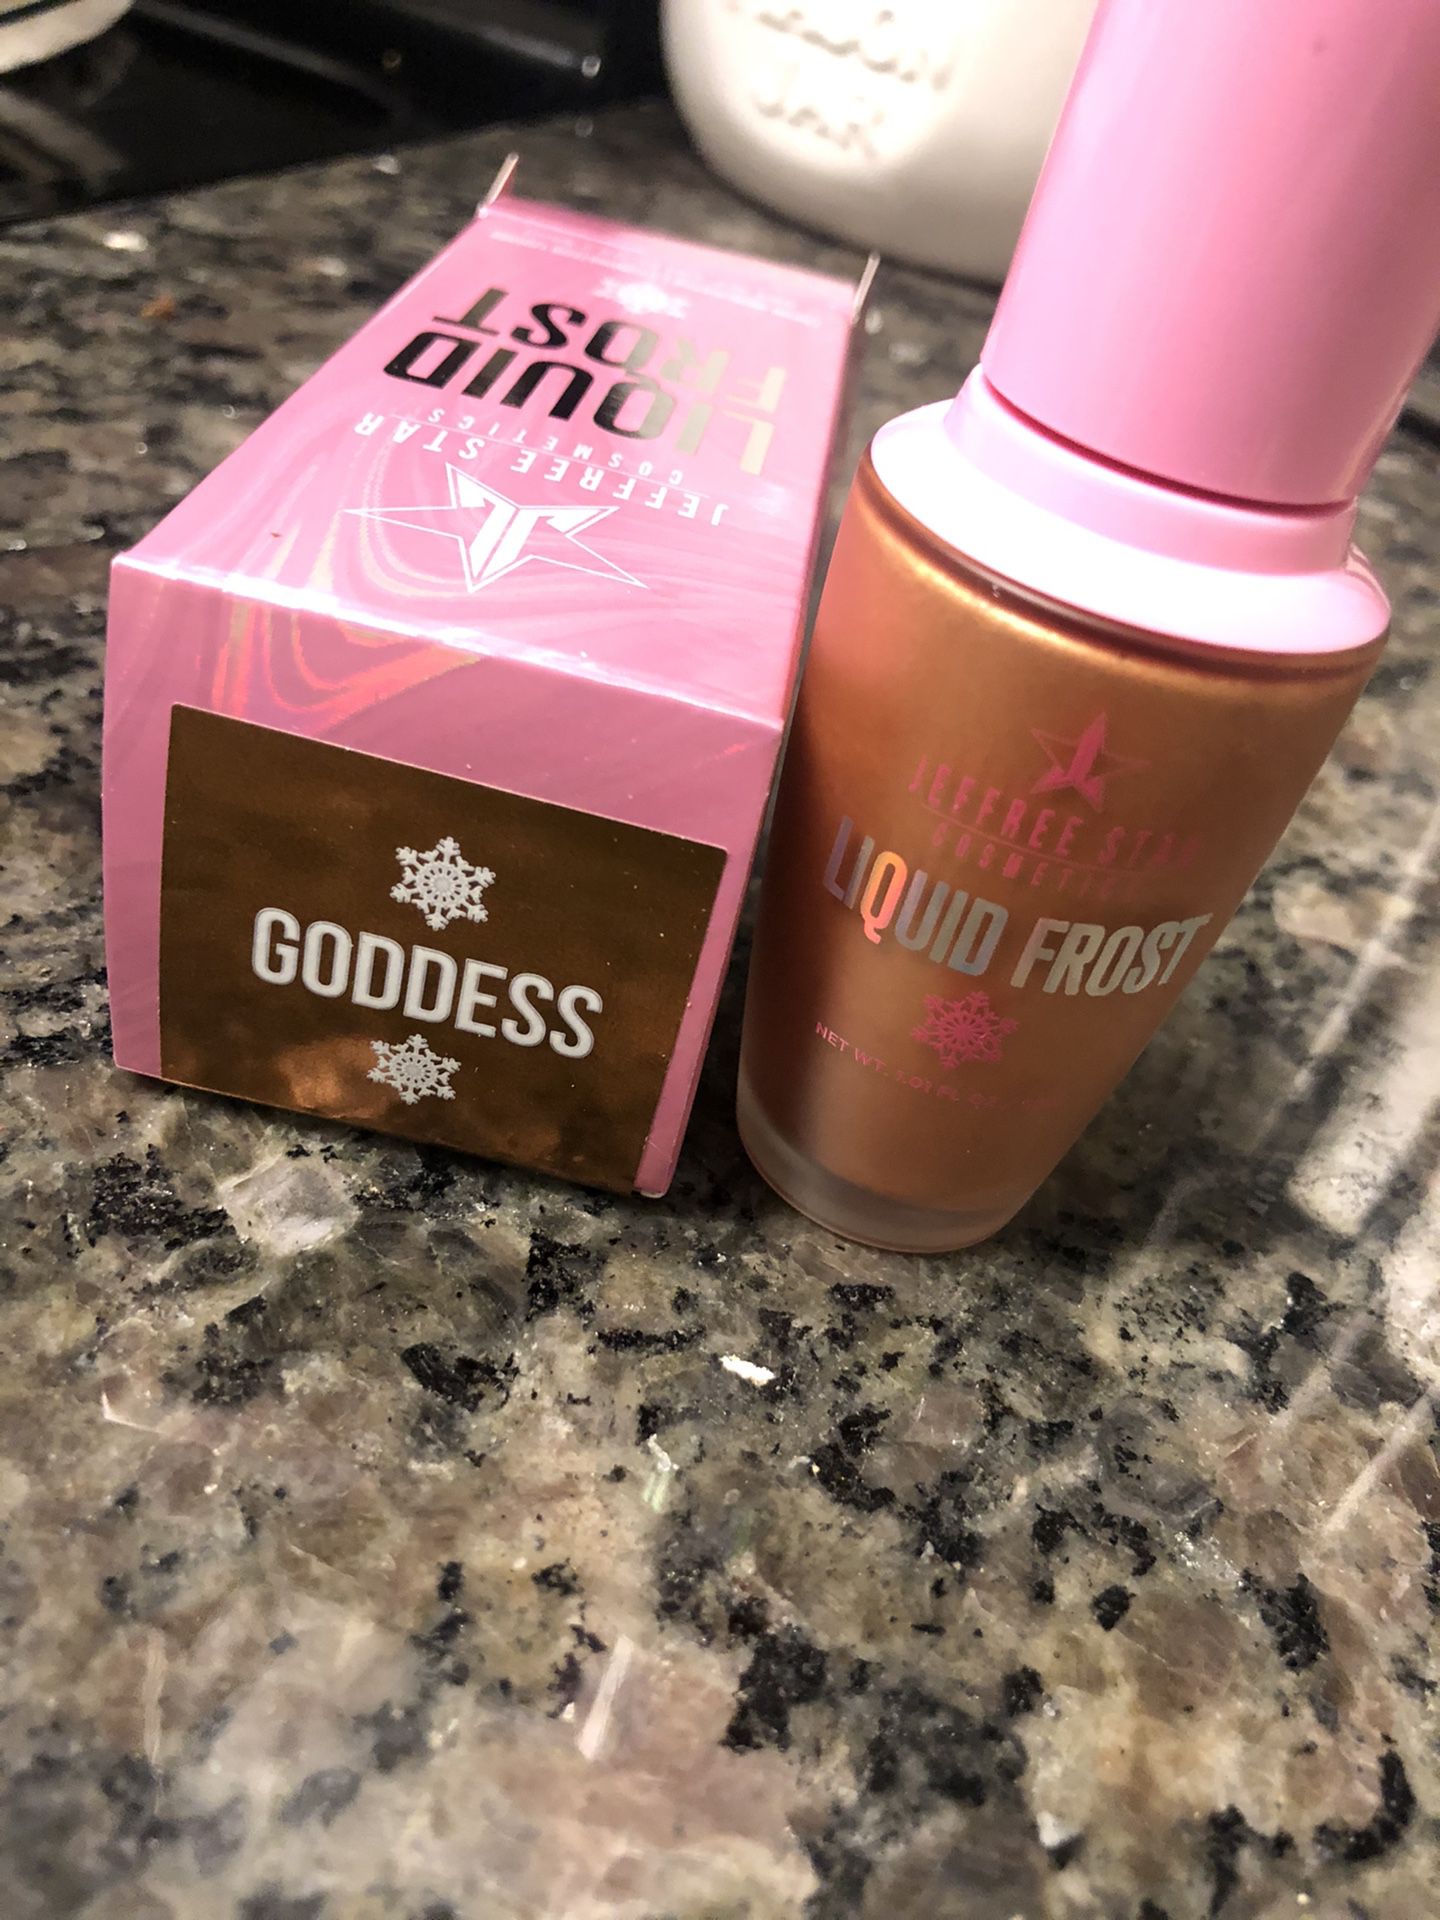 Jeffree Star Cosmetics Liquid Frost Highlighter in shade Goddess